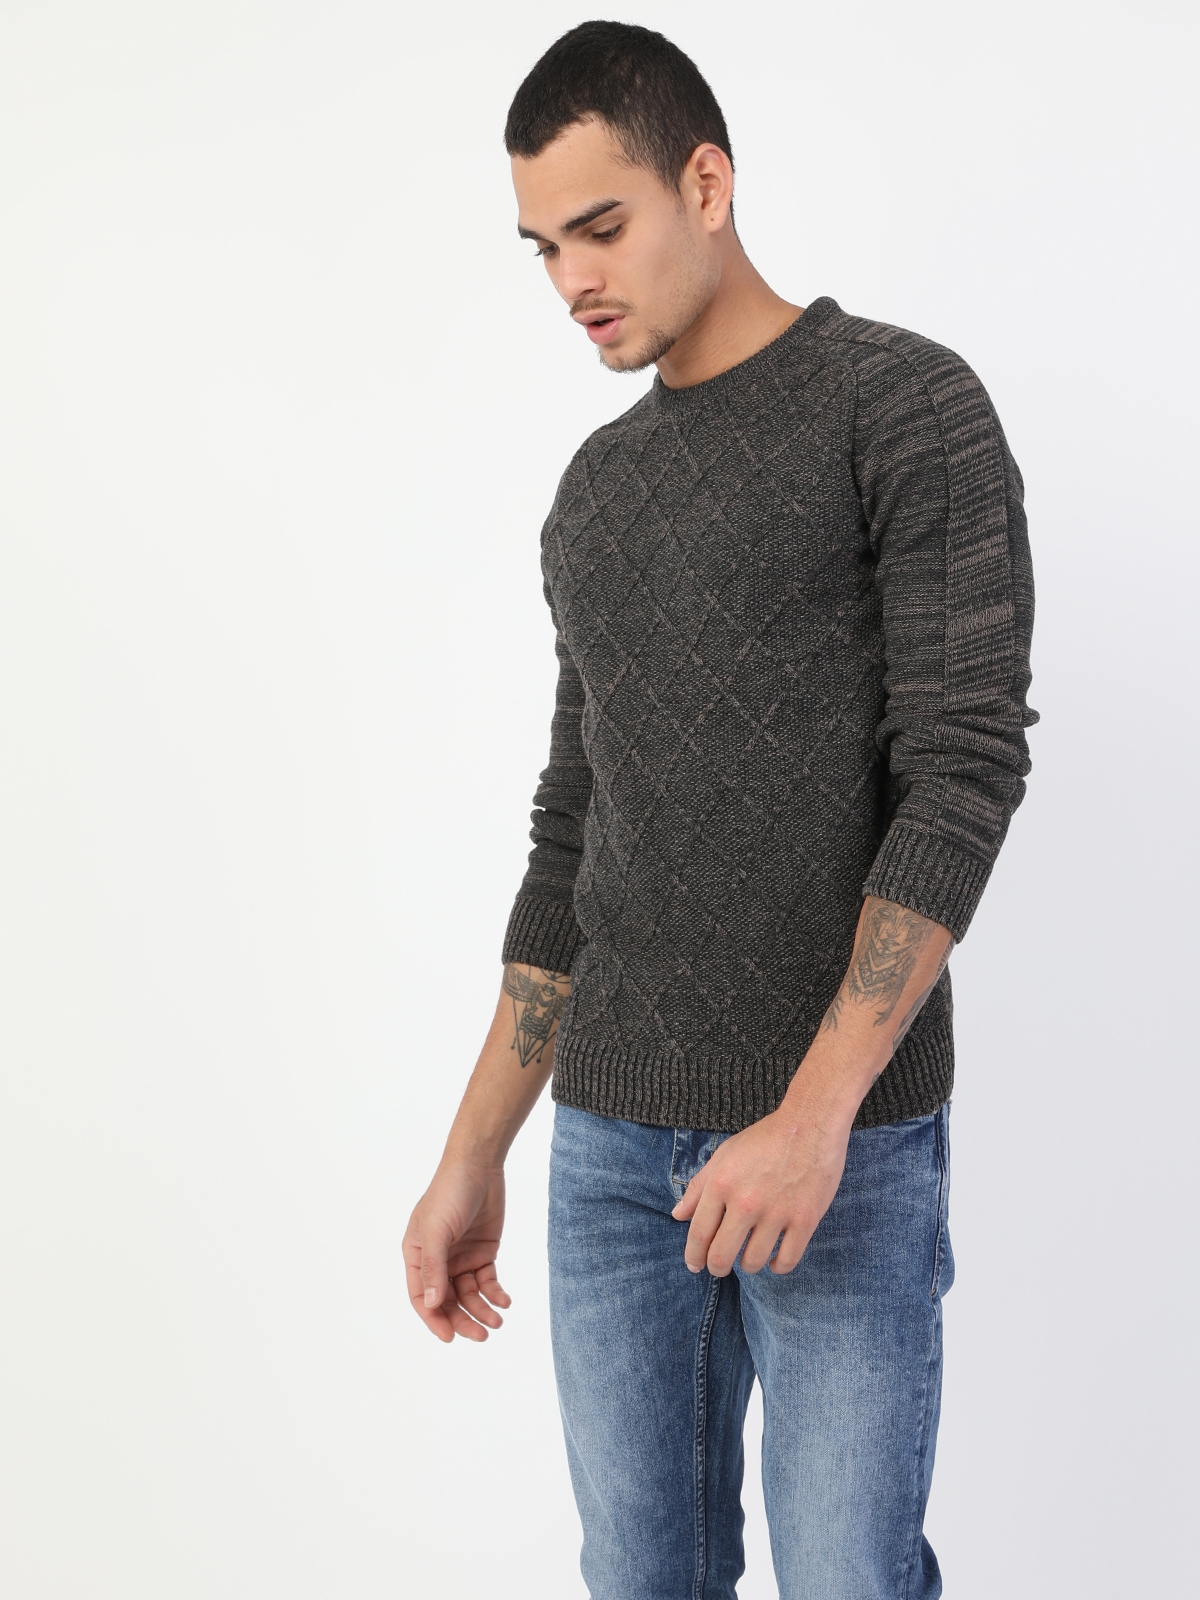 Colins Vızon Men Sweaters. 3